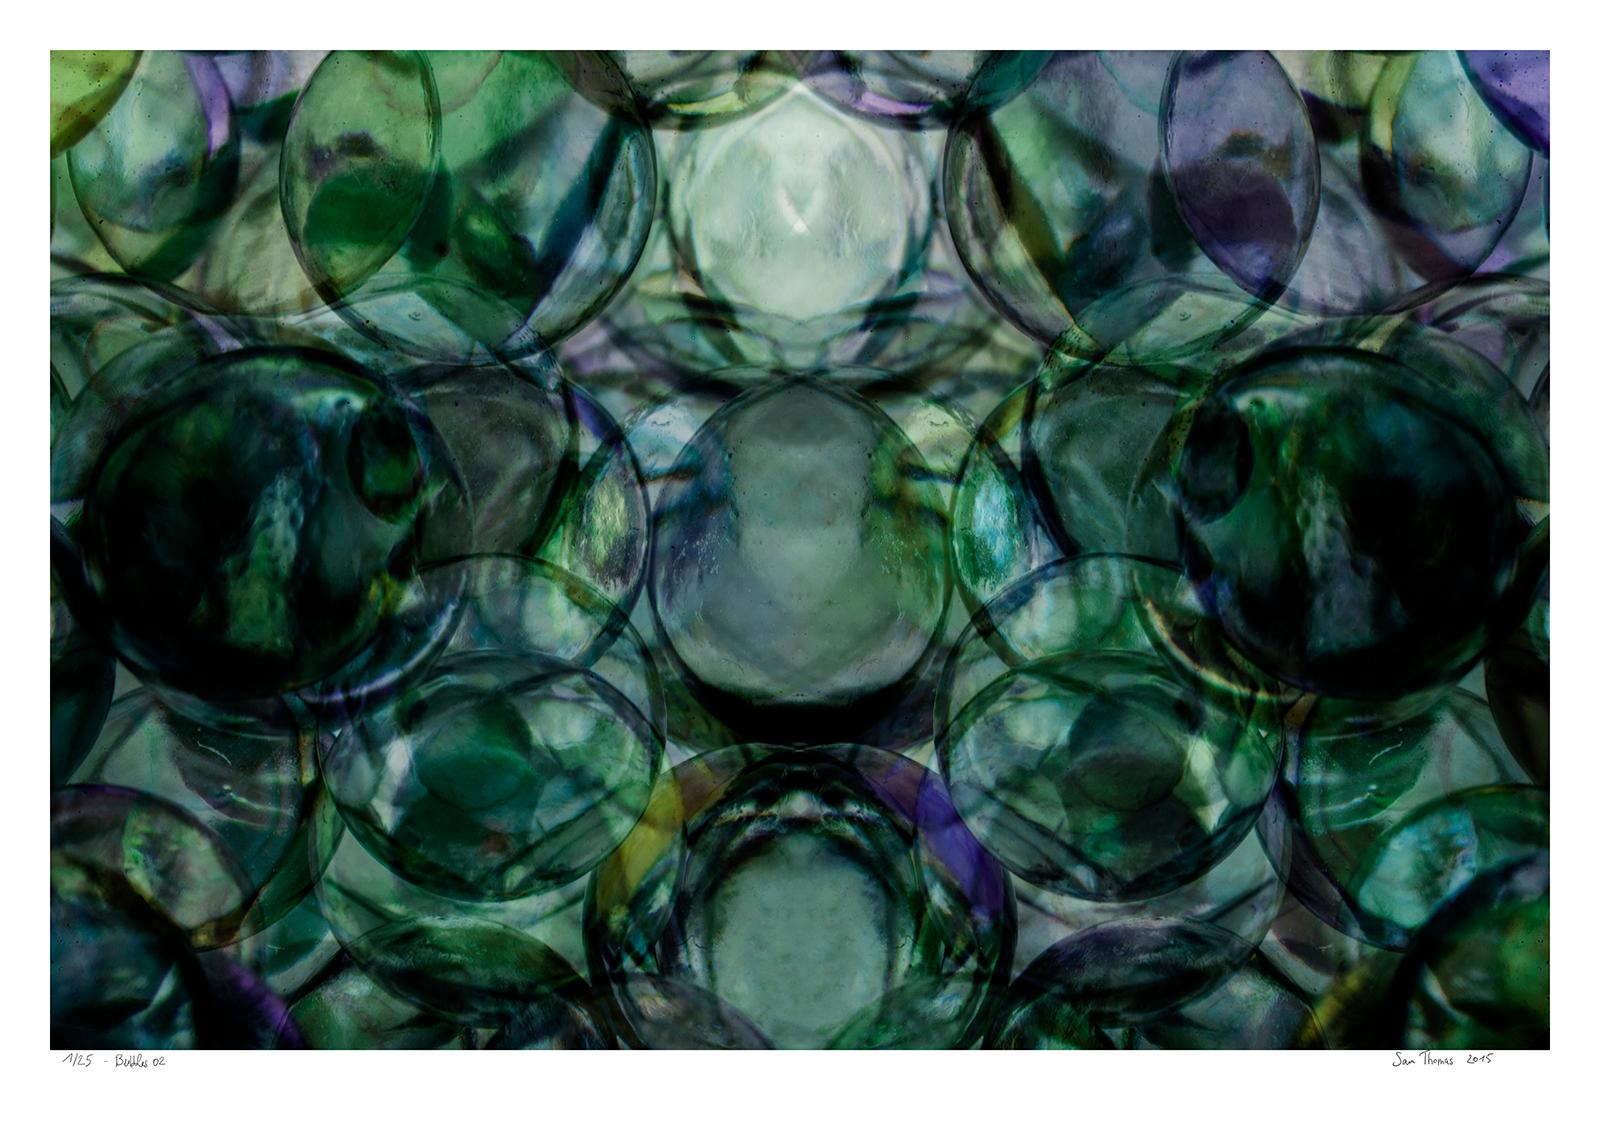 Abstract Photograph Sam Thomas - Bubbles 02 - Photographie couleur abstraite, tirage limité